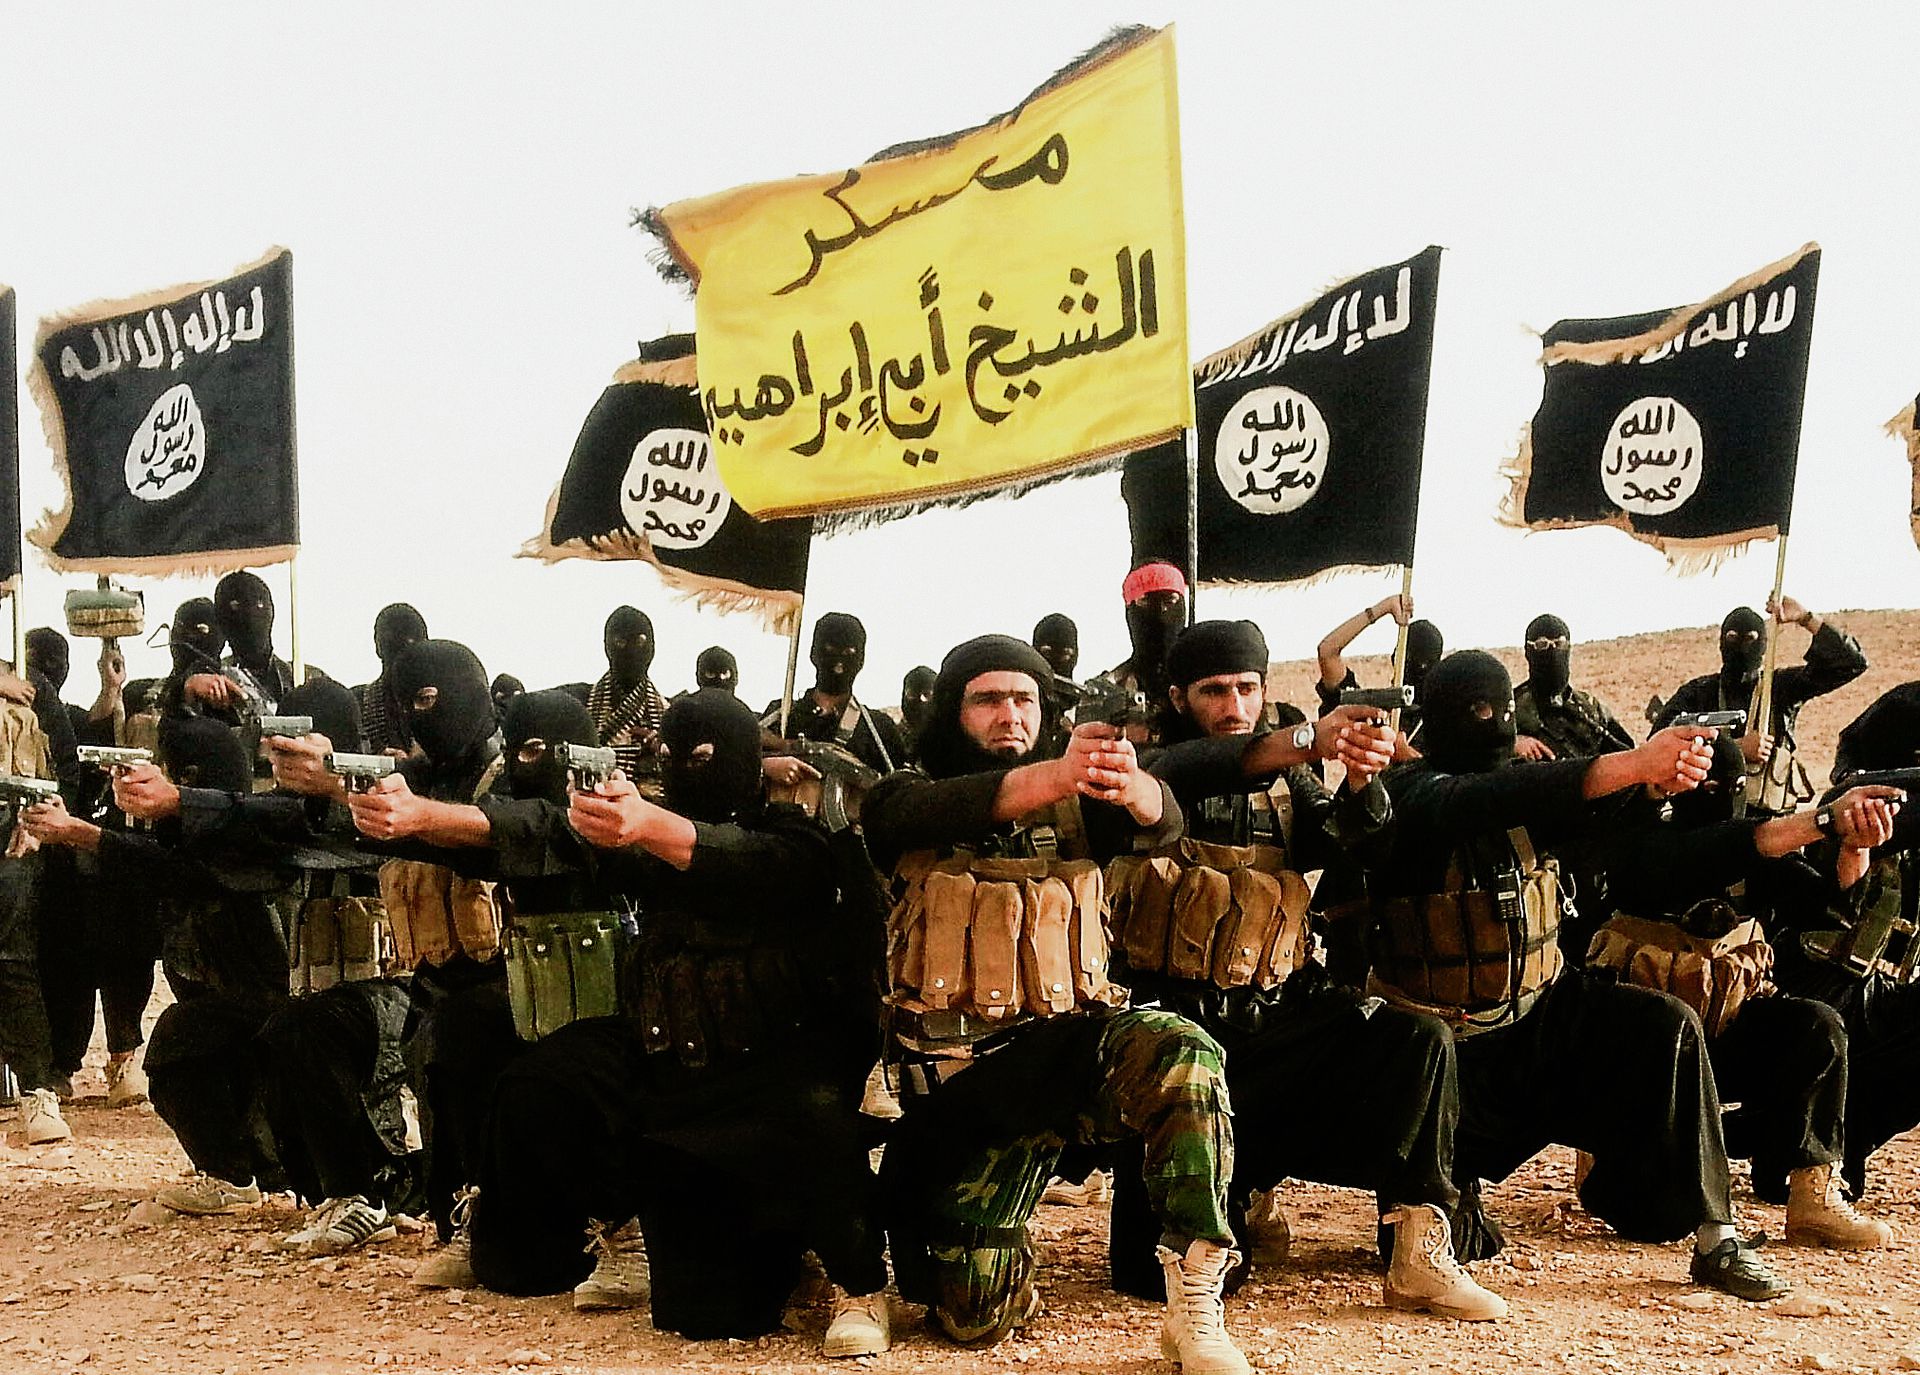 Игил группировка террористов. Исламские террористические организации. Боевики Исламского государства. Флаг ИГИЛ.